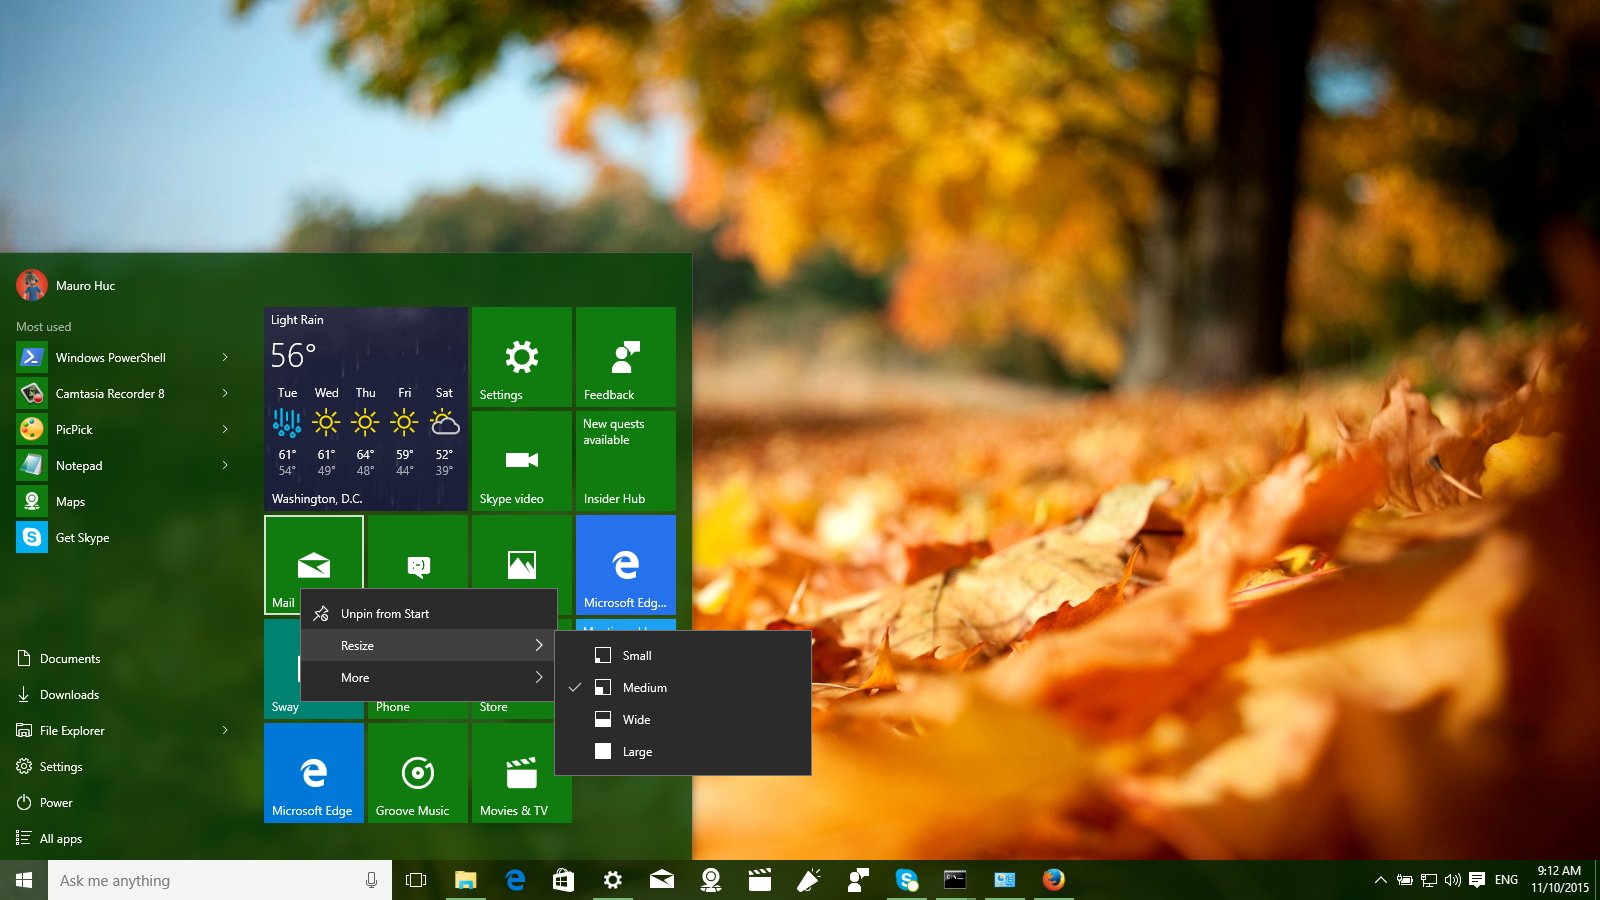 microsoft - Những điểm mới trong bản cập nhật Windows 10 build 10586 Smart-resize-menu-fallupdate1